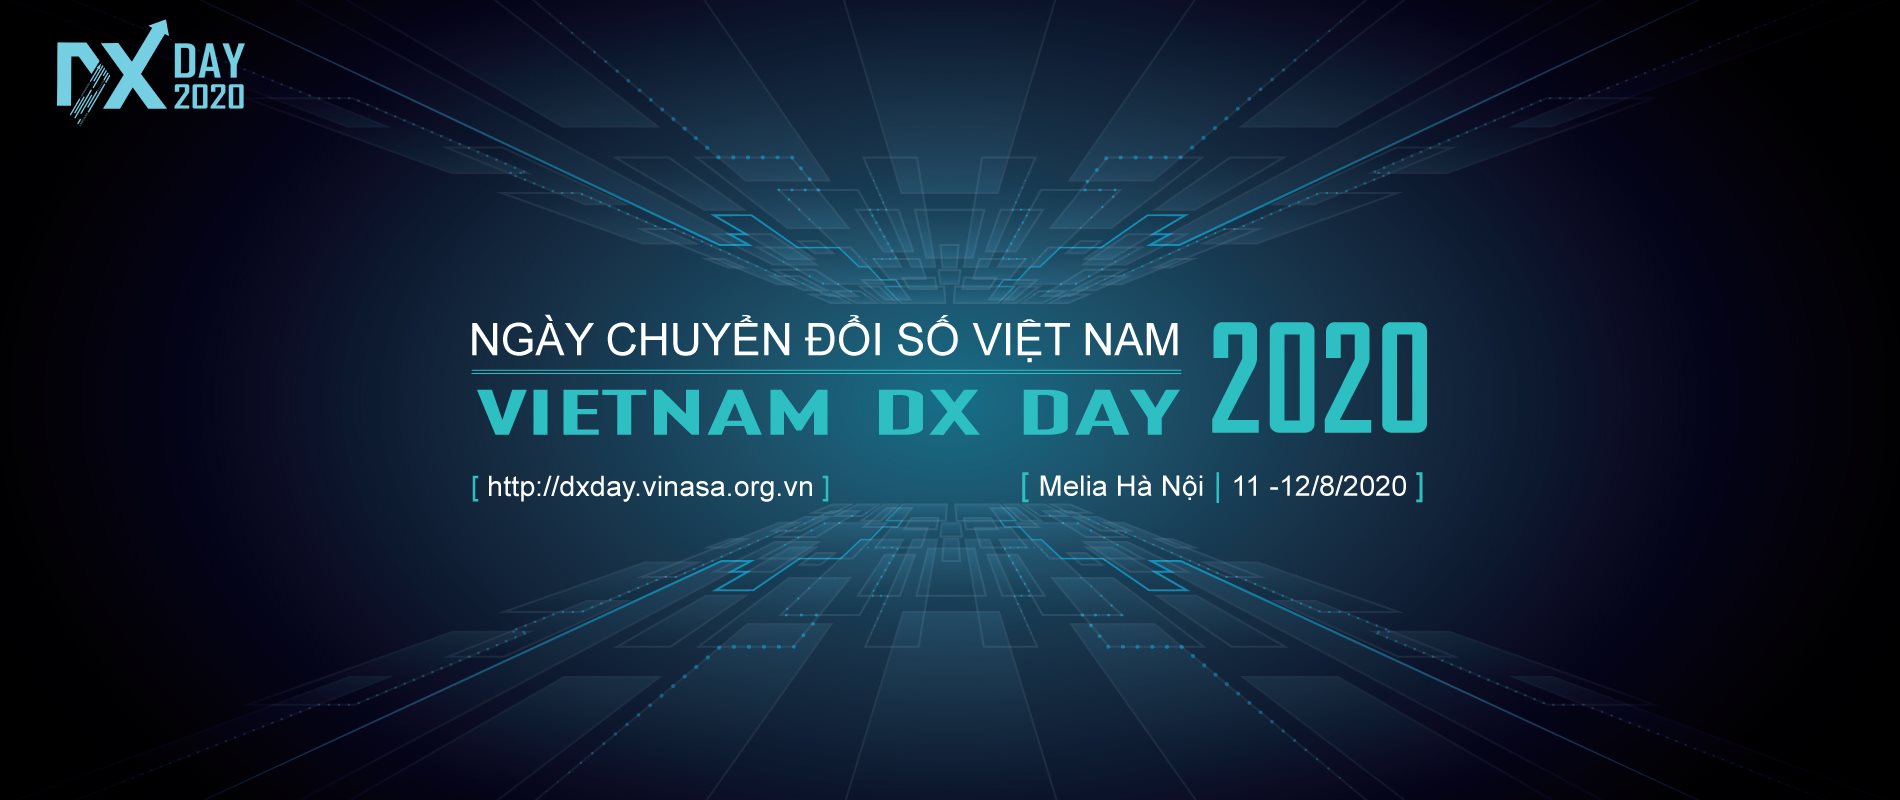 Mời Tham Gia “Ngày Chuyển Đổi Số Việt Nam 2020 – Vietnam Dx Day 2020” | Qtsc